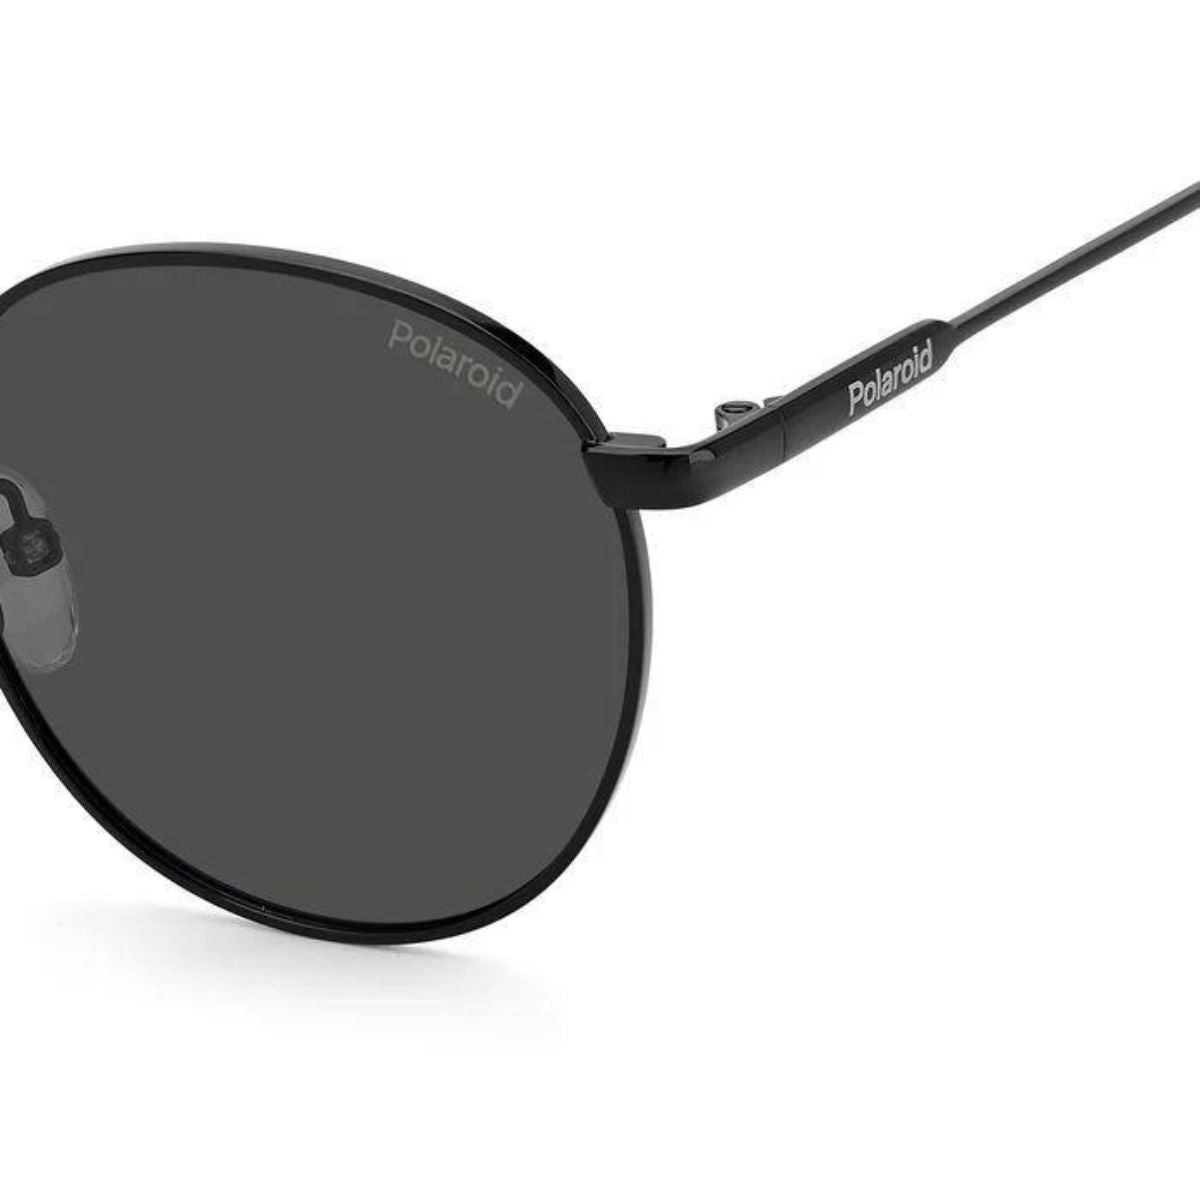 "Best Polariod 6171S 807 M9 Polarized Sunglasses For Men's Online At Optorium"